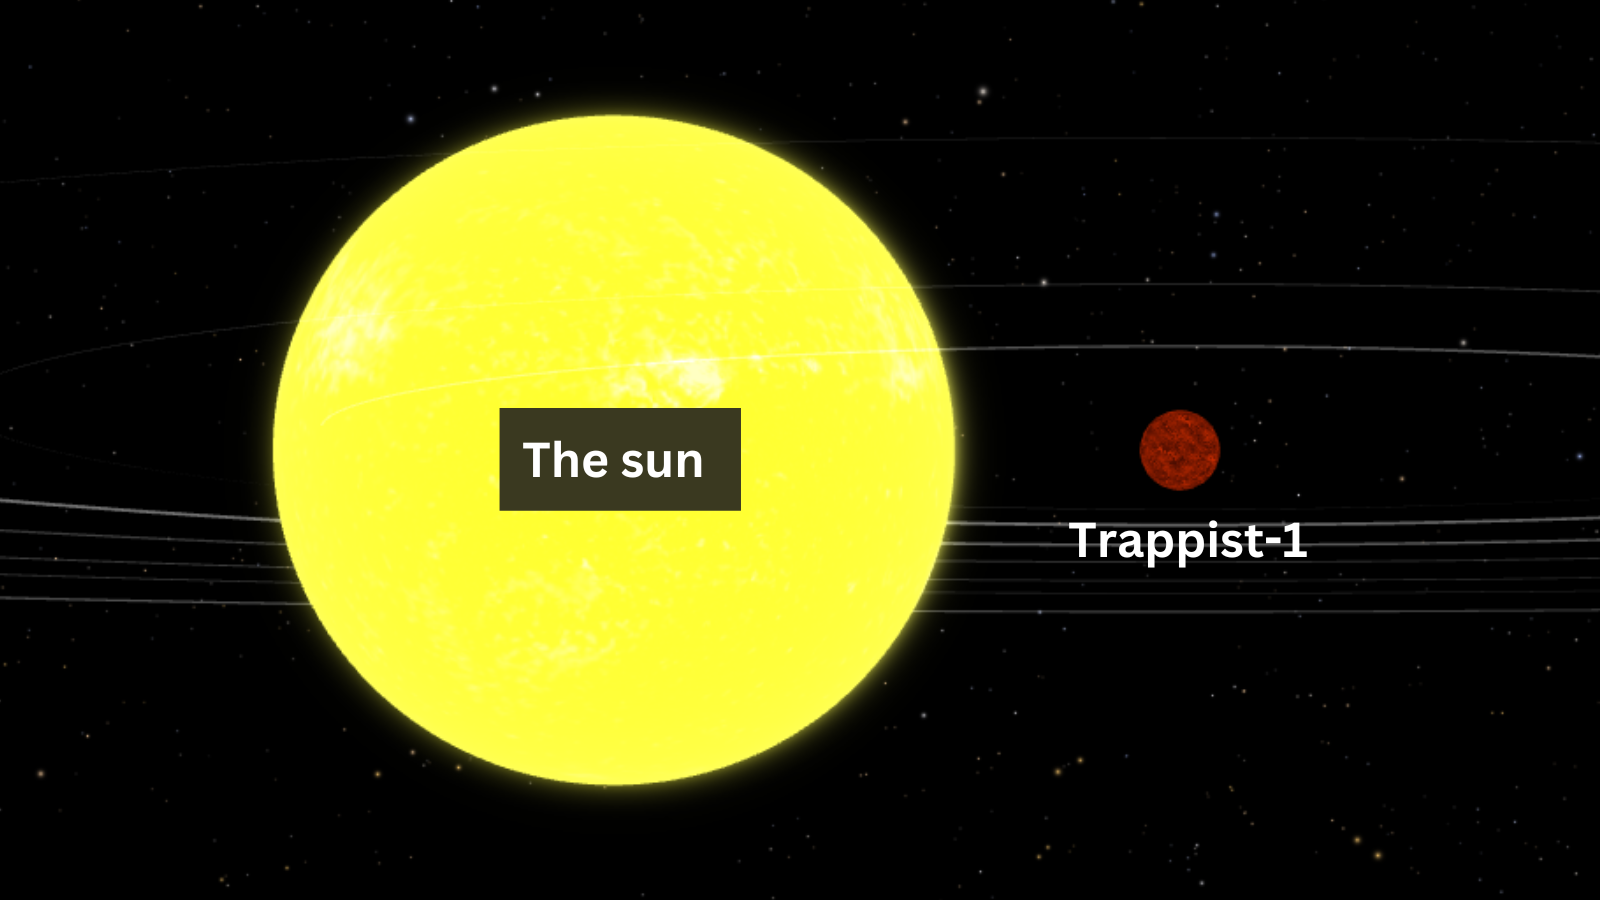 El exoplaneta potencialmente habitable Trappist-1 ha sido descubierto destruyendo su atmósfera